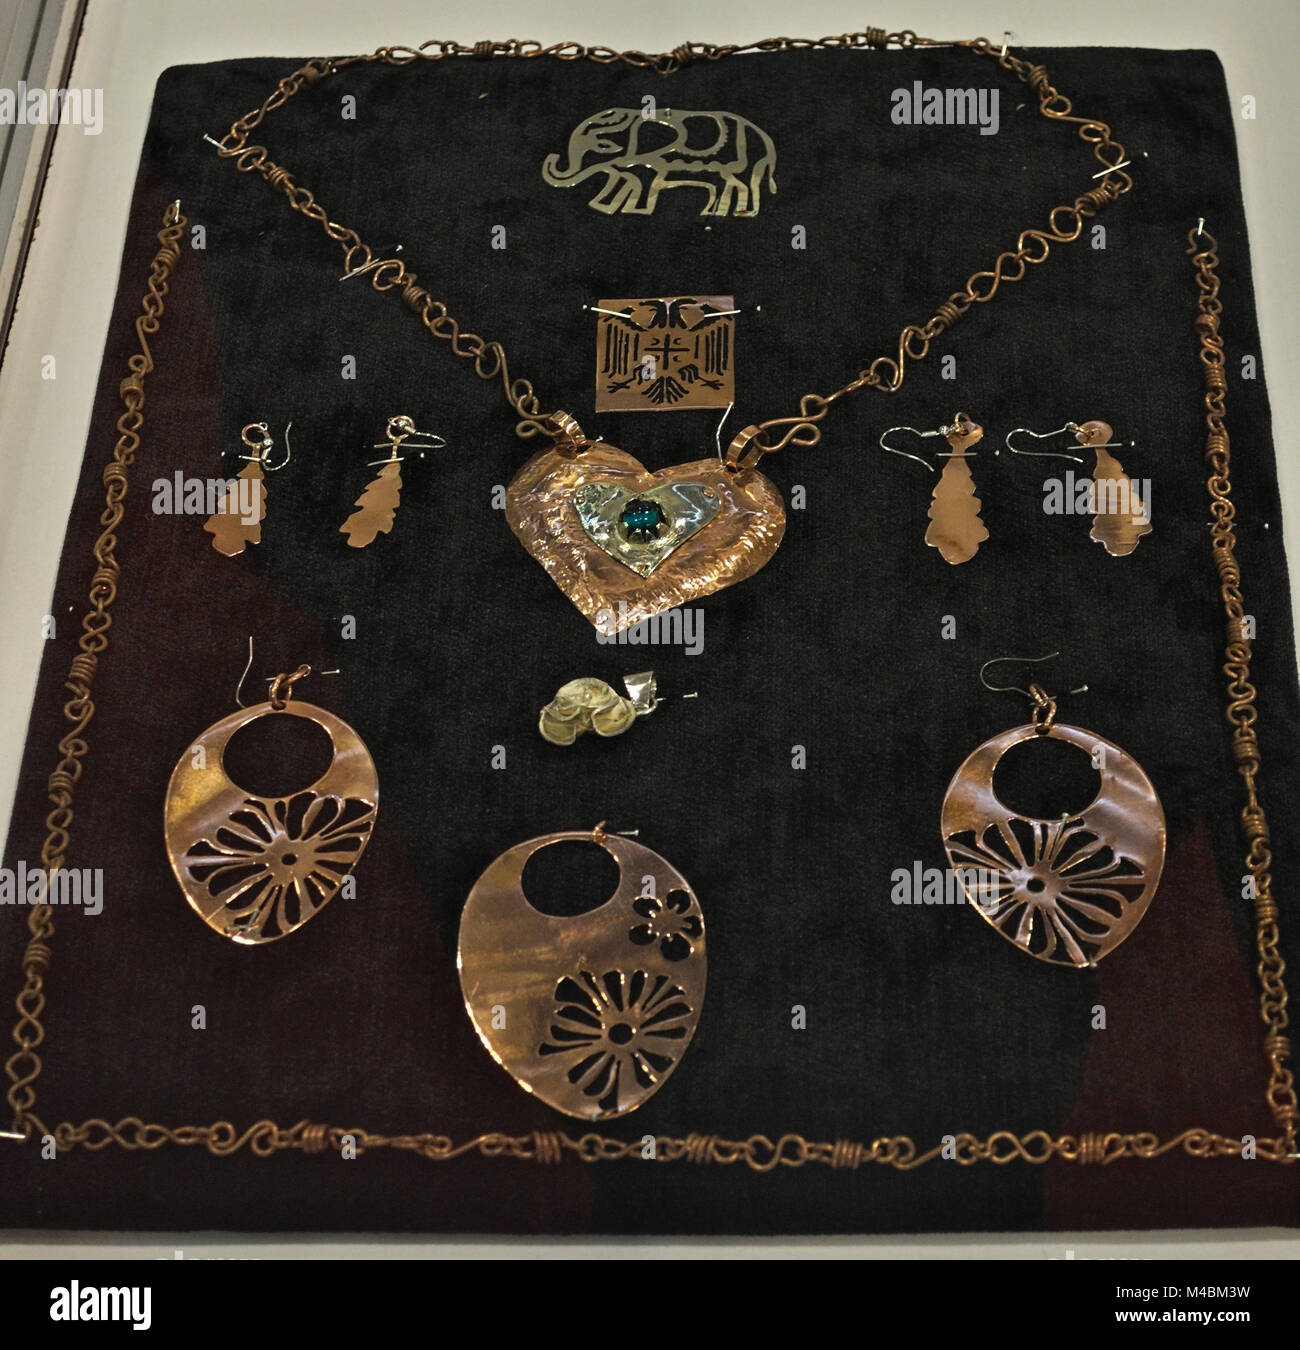 Repliche di gioielli antichi visualizzato sulla fiera expo Foto stock -  Alamy